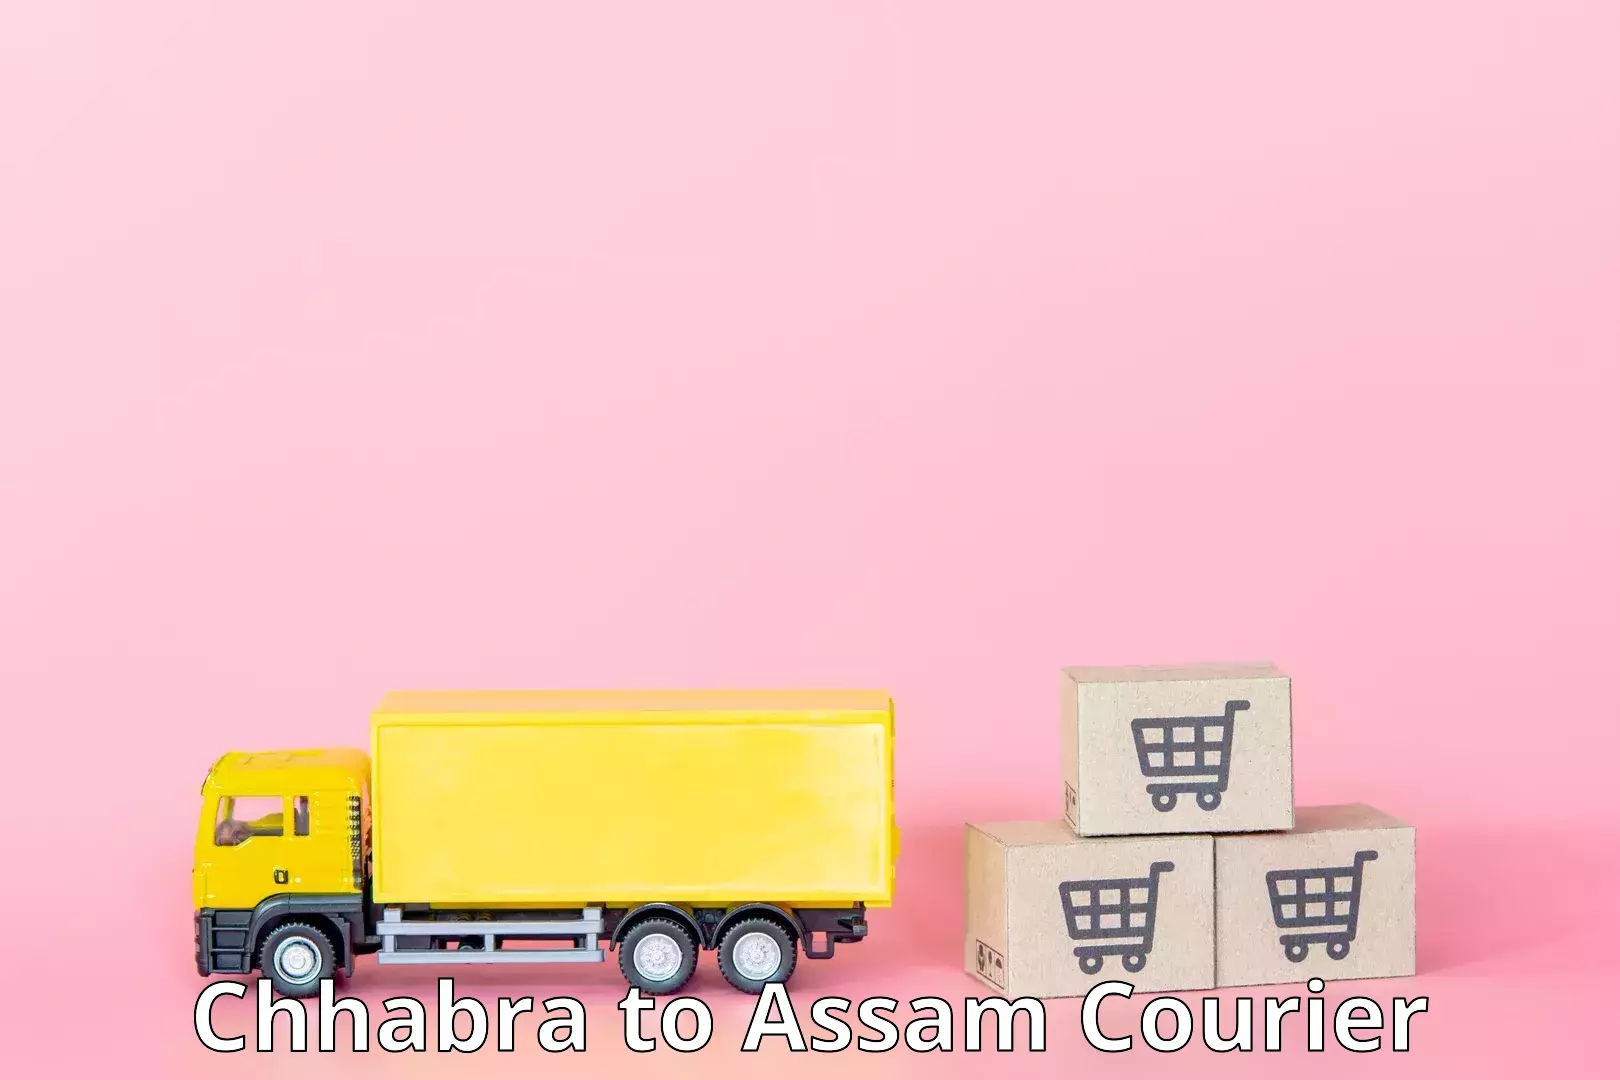 Lightweight courier Chhabra to Assam